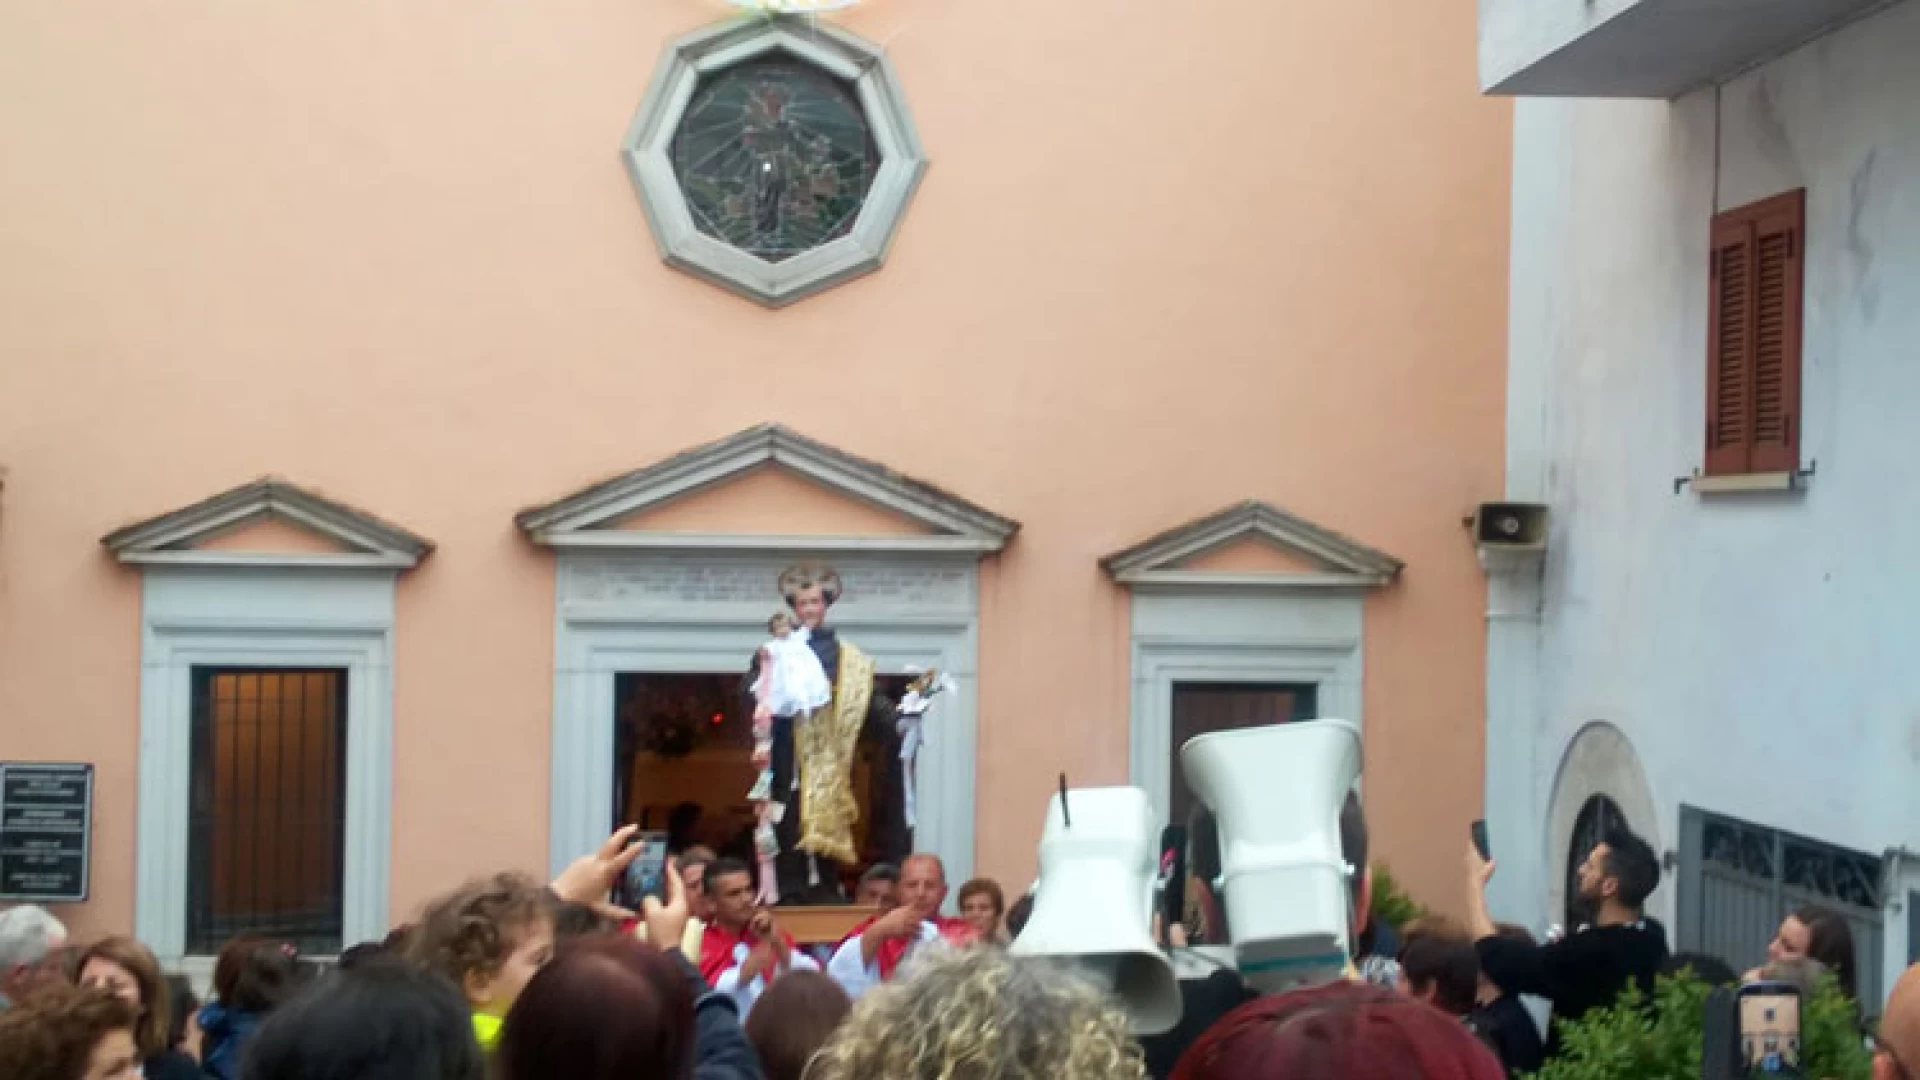 Colli a Volturno: tornano anche se limitati i festeggiamenti dedicati a Sant'Antonio da Padova. Appuntamento per il 12 e 13 giugno